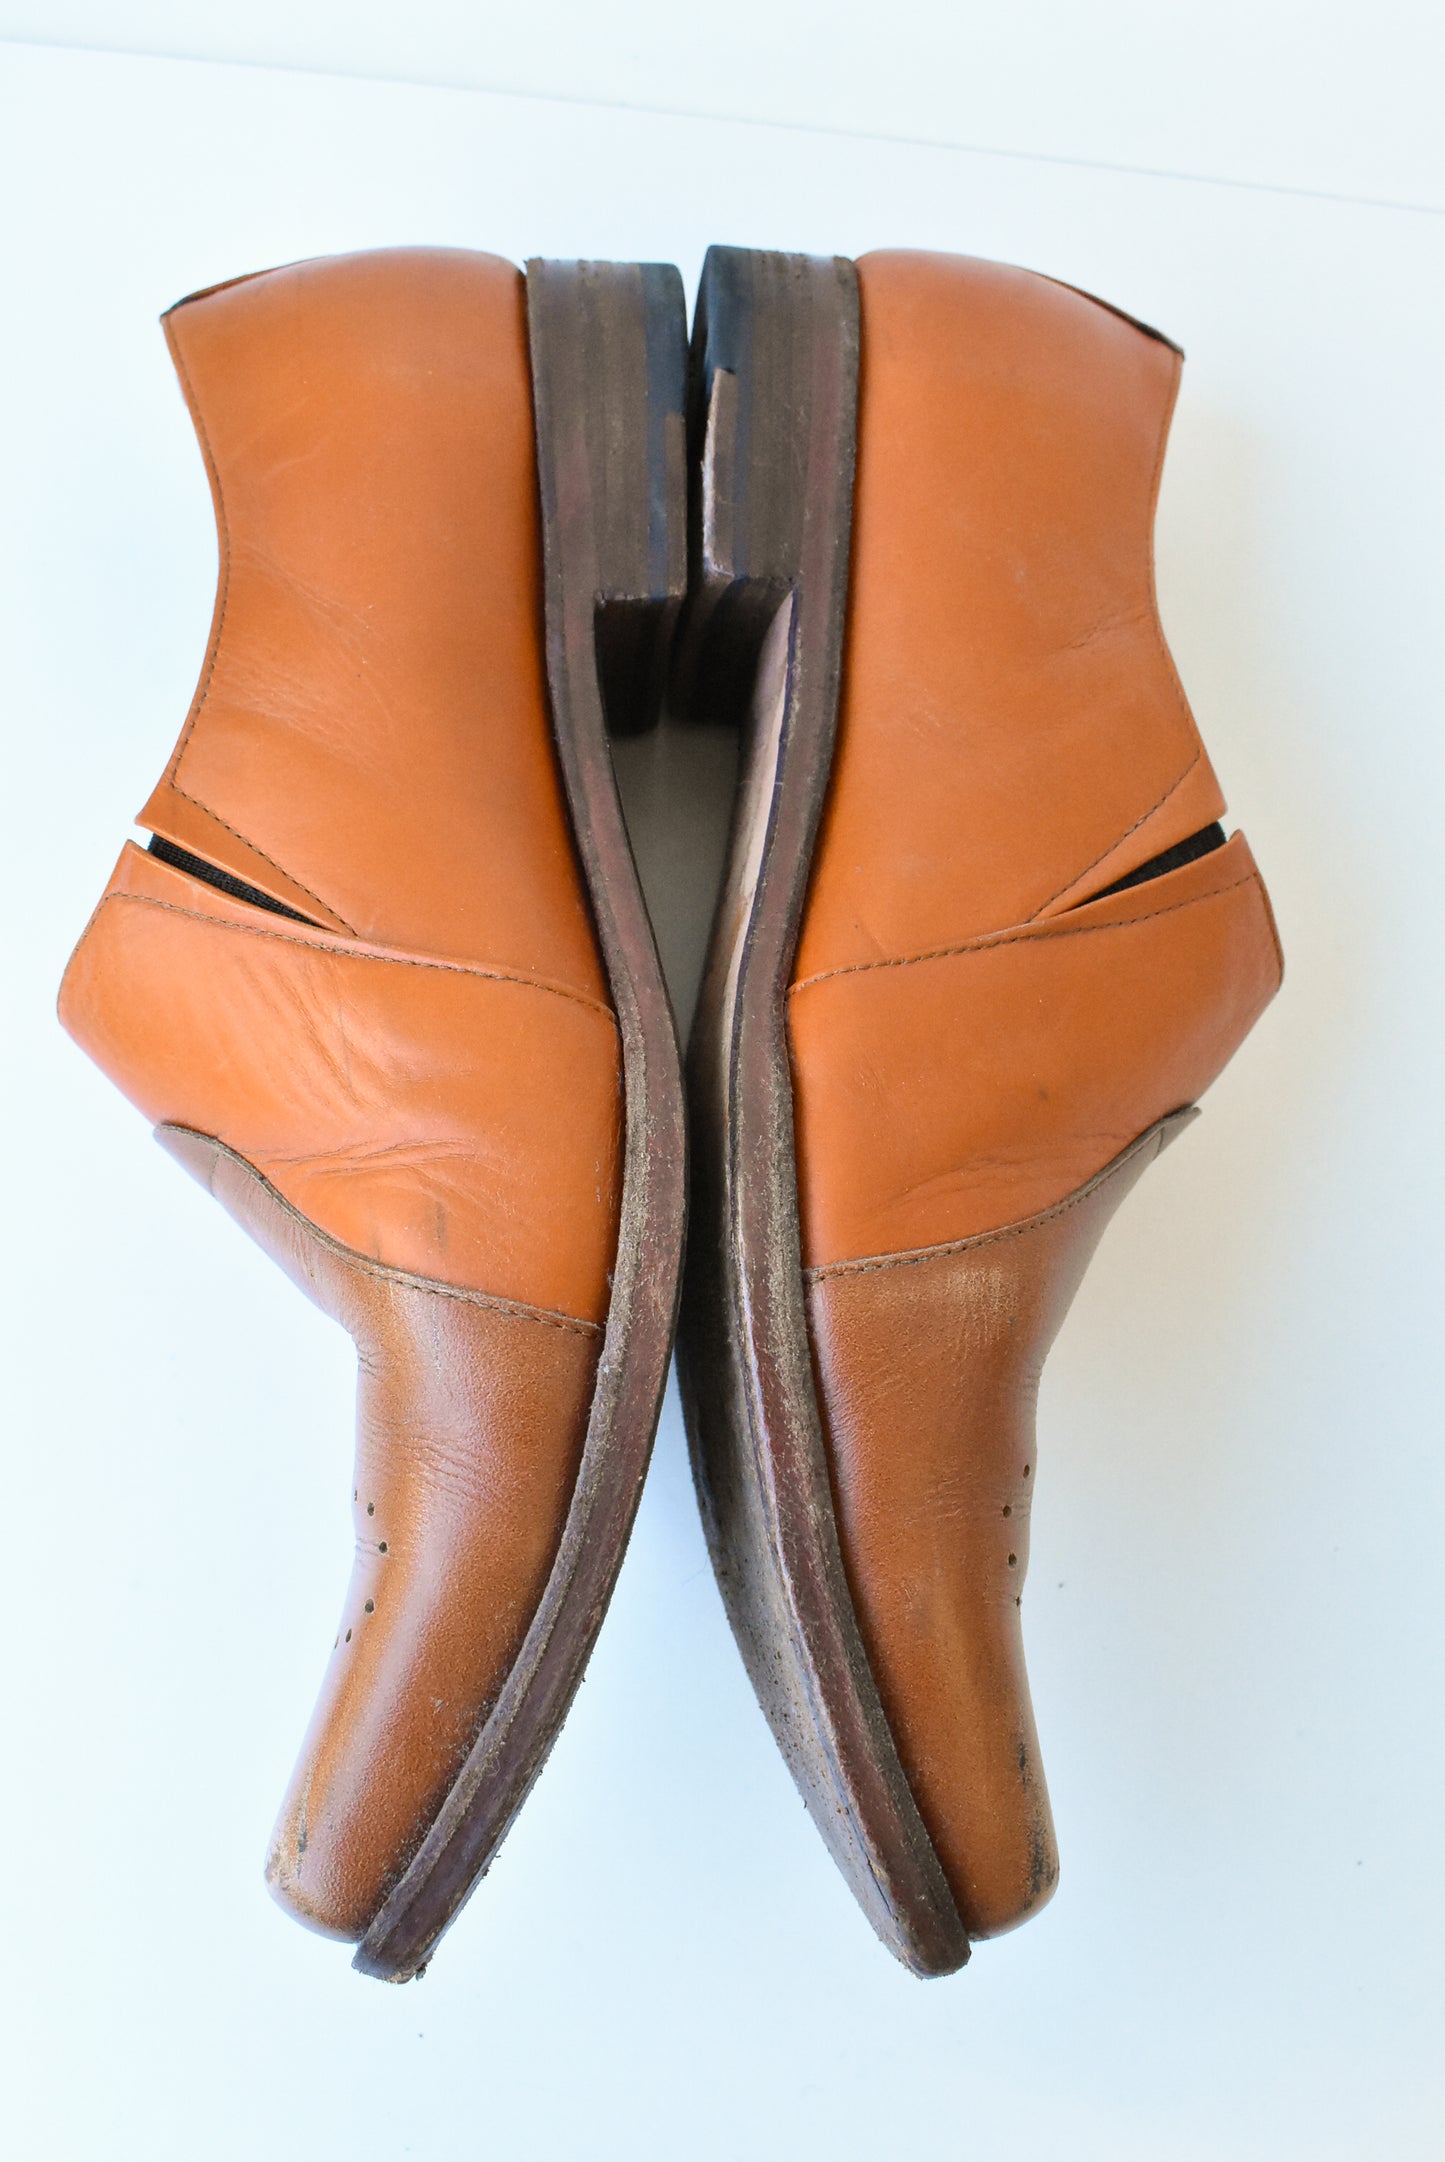 YALY tan leather dress shoes, eu46